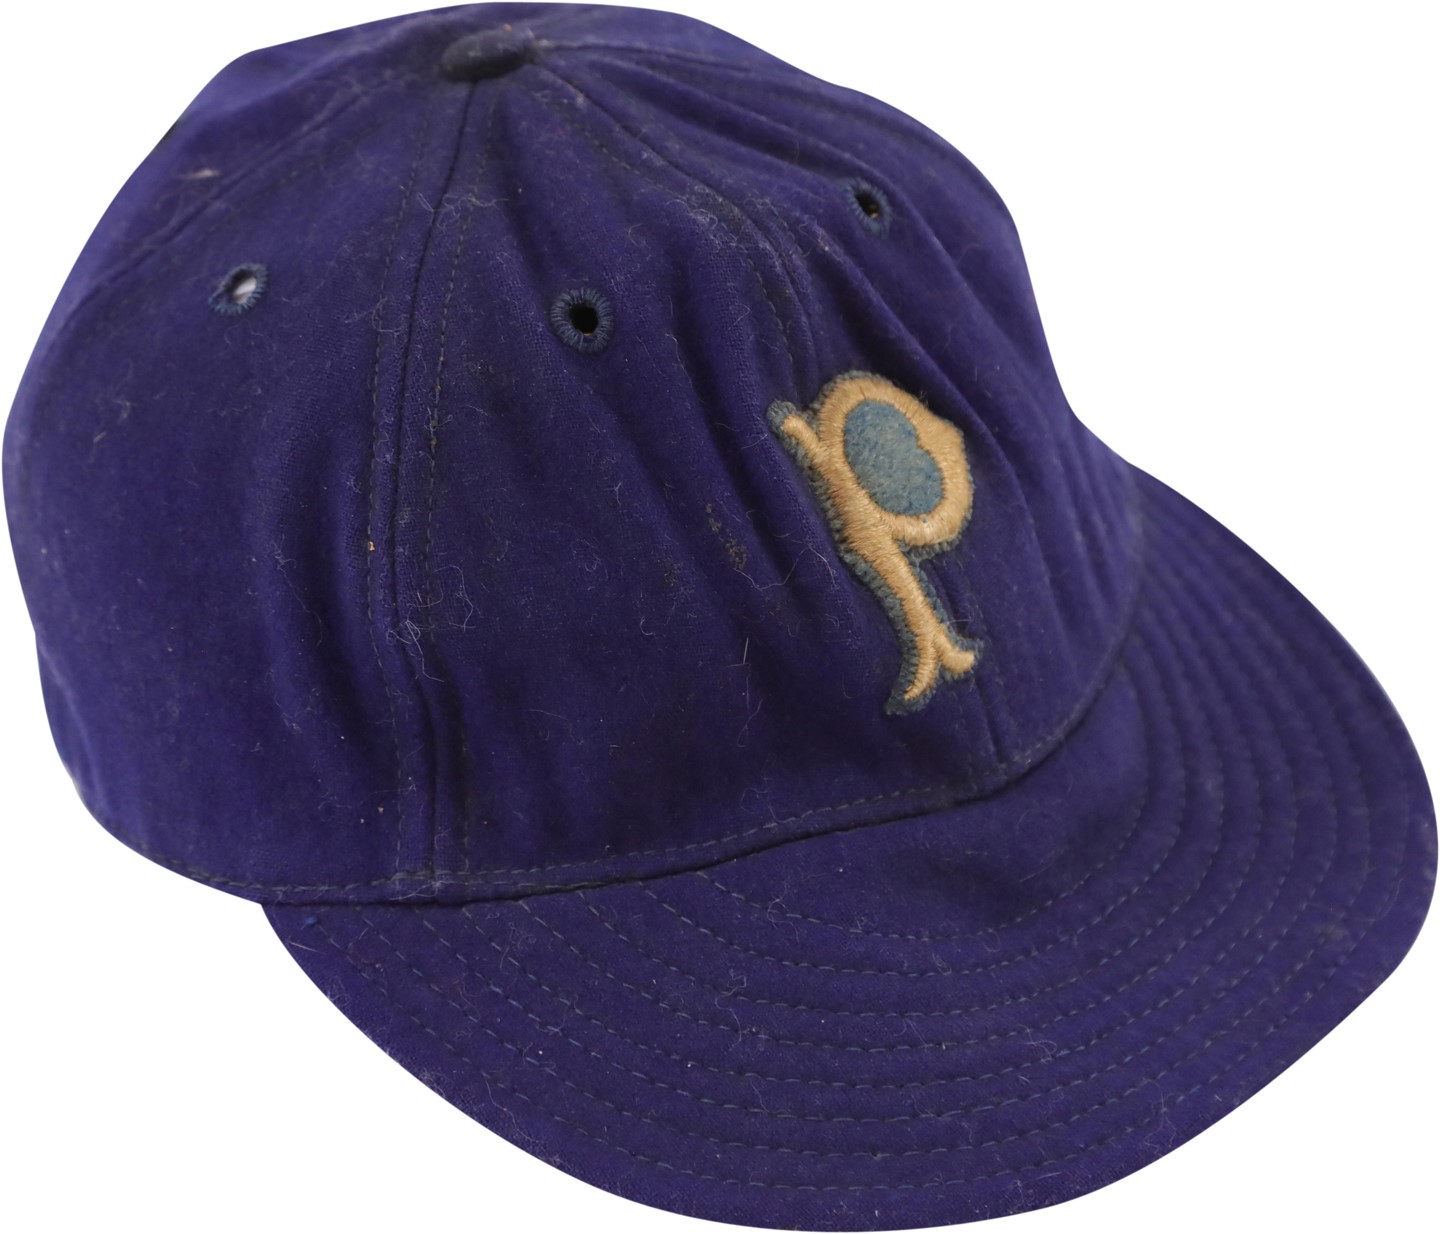 - Very Rare 1940s Pittsburgh Pirates Game Worn Hat